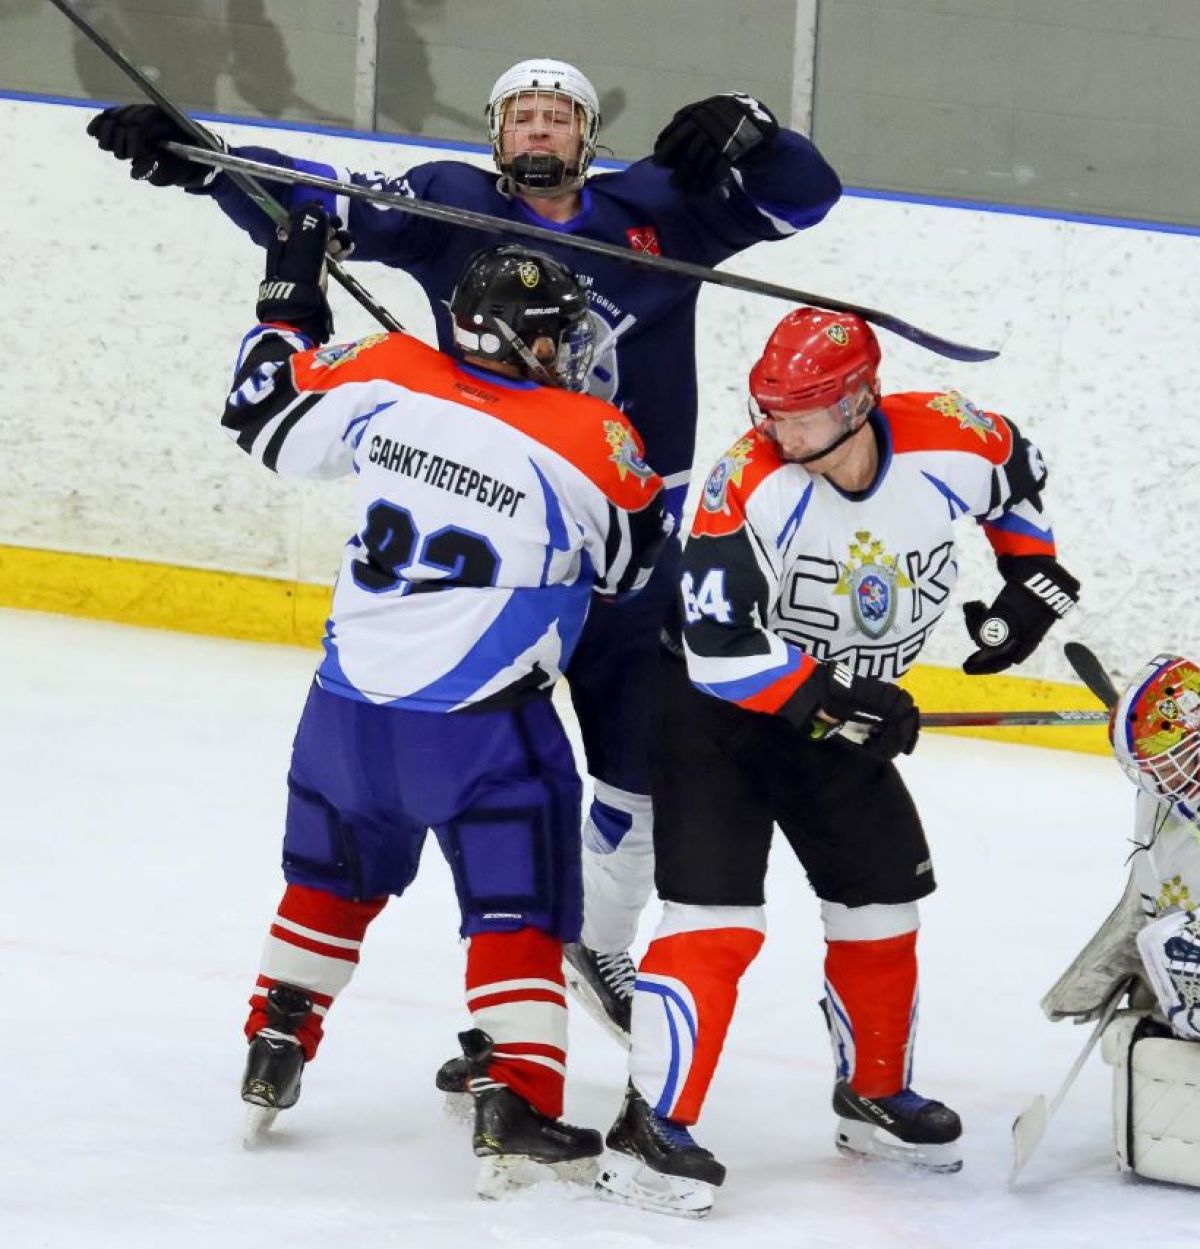 Итоги 2-ой игровой недели регионального этапа Чемпионата Офицерской хоккейной лиги в Санкт-Петербурге!